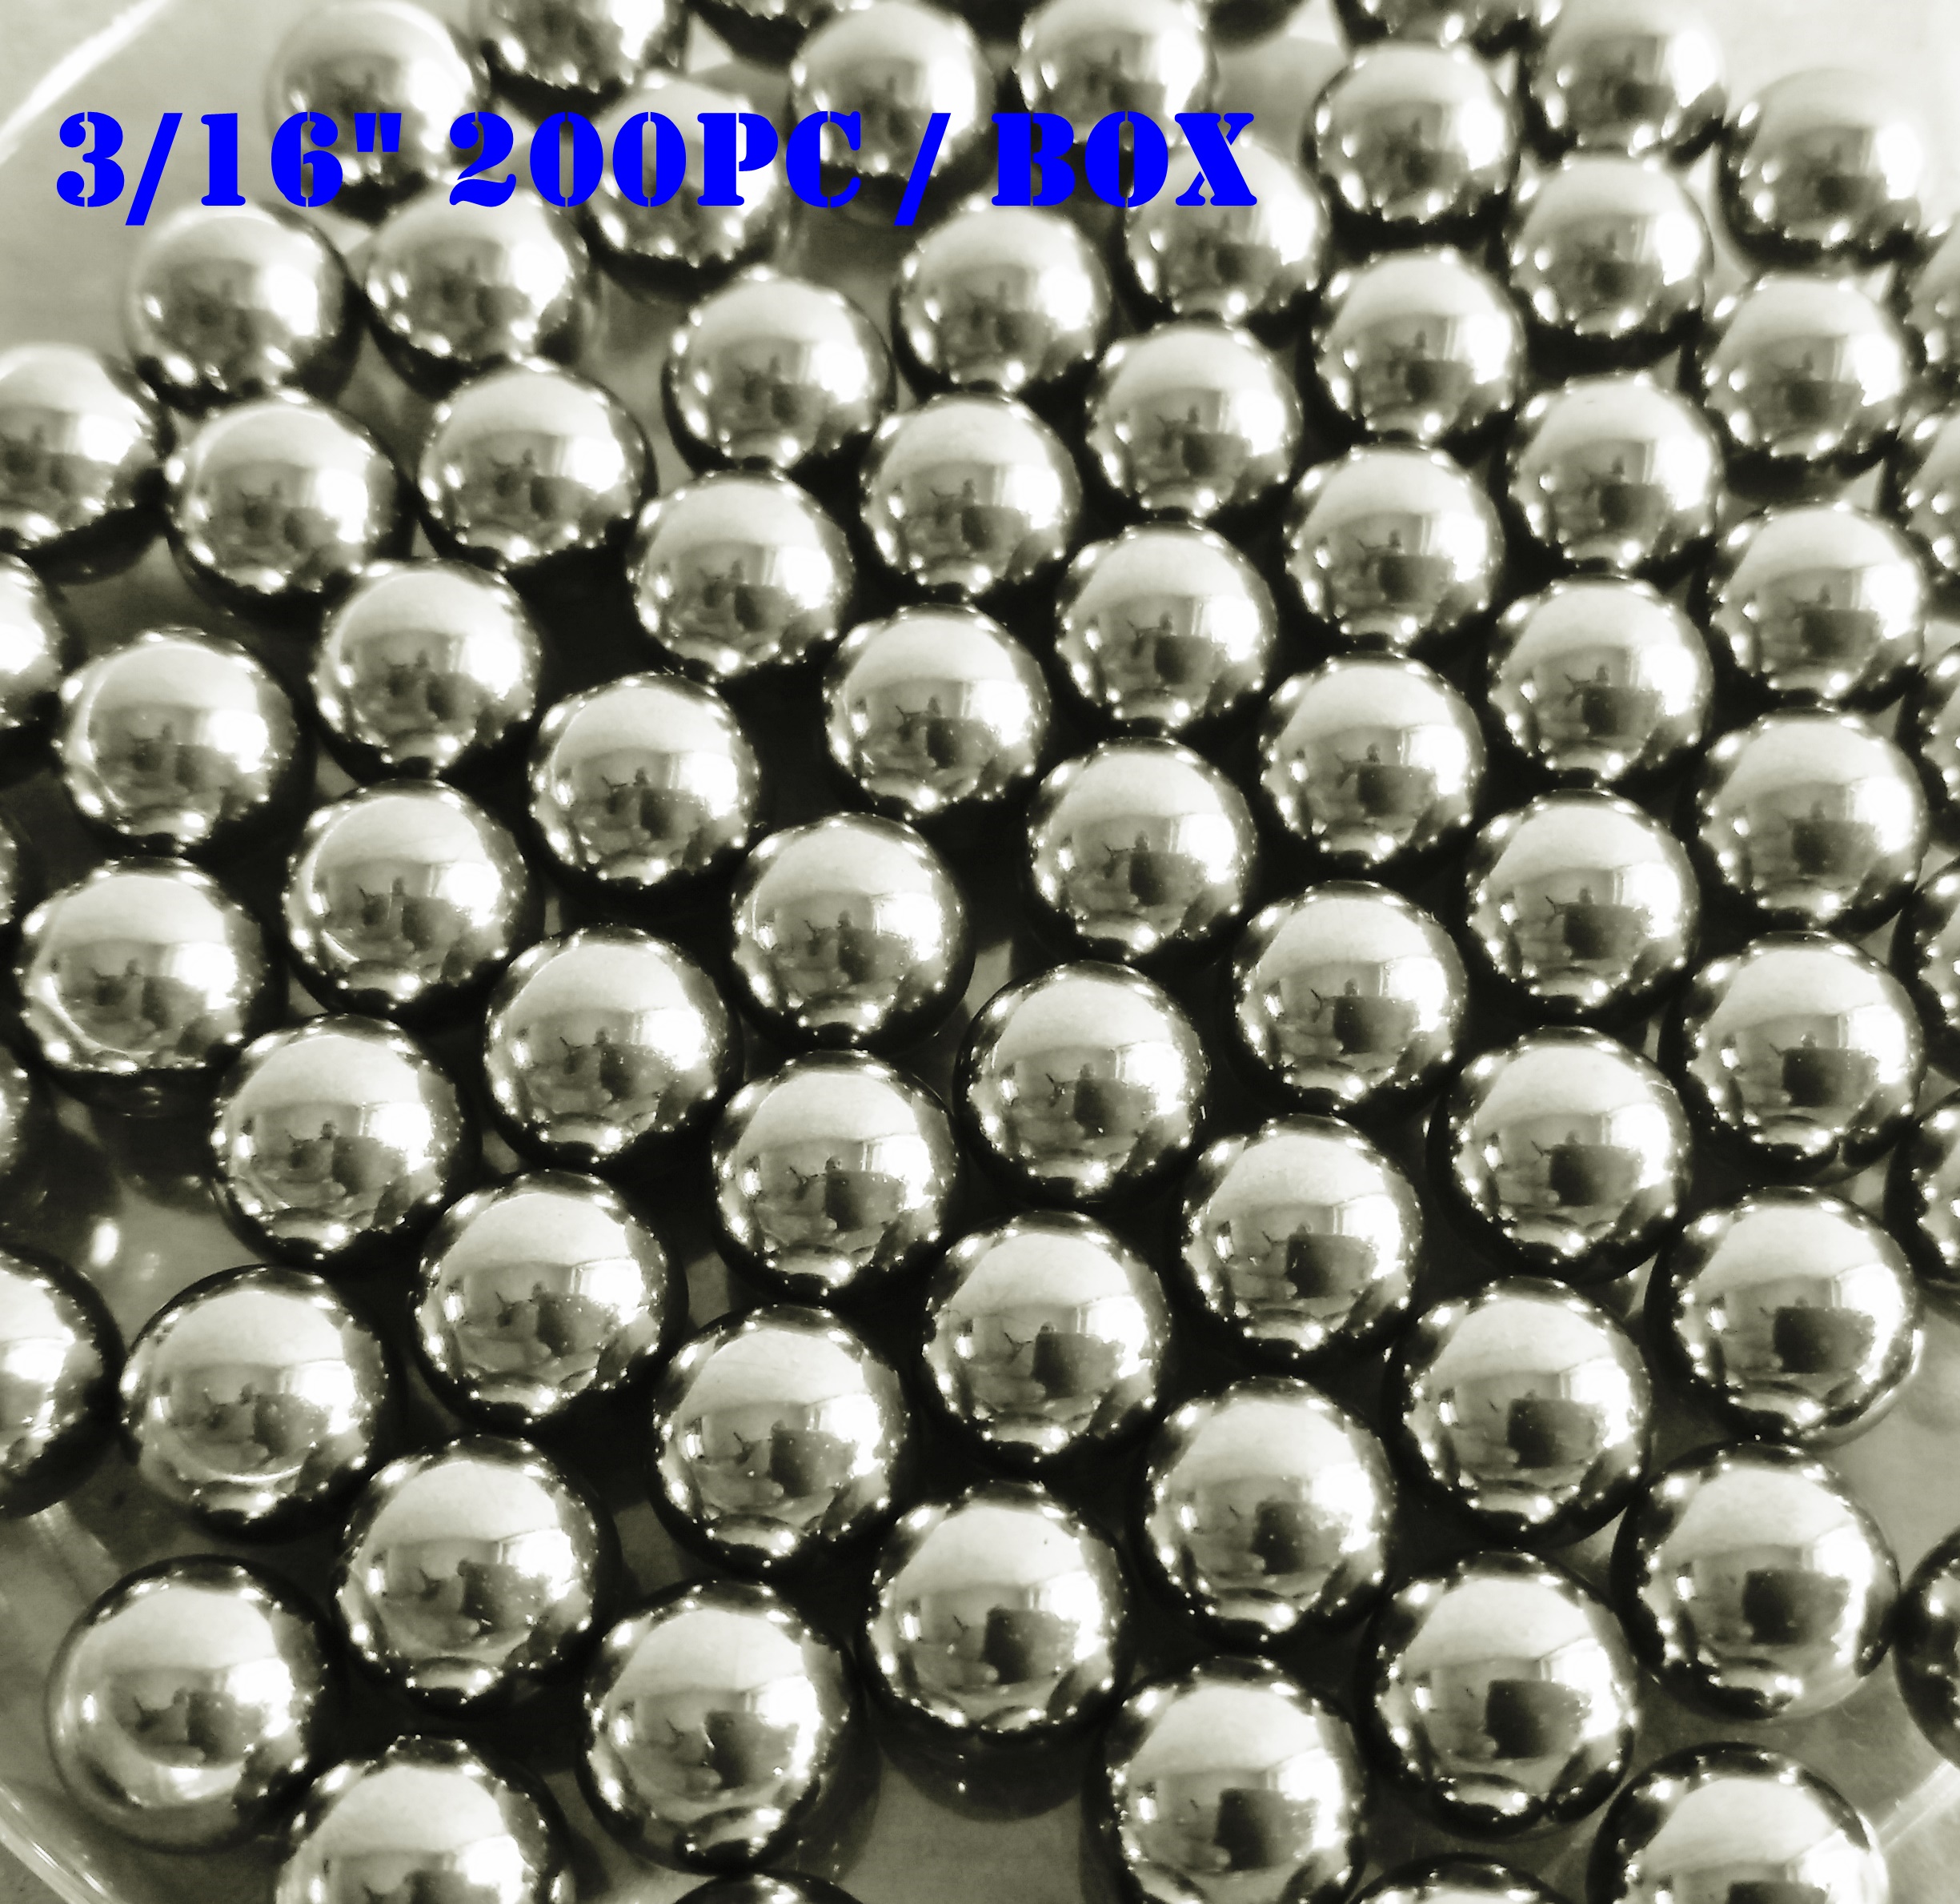 Tangeseiki Bearing Balls 3/16" (Grade 100 ) Pack of 200 Balls